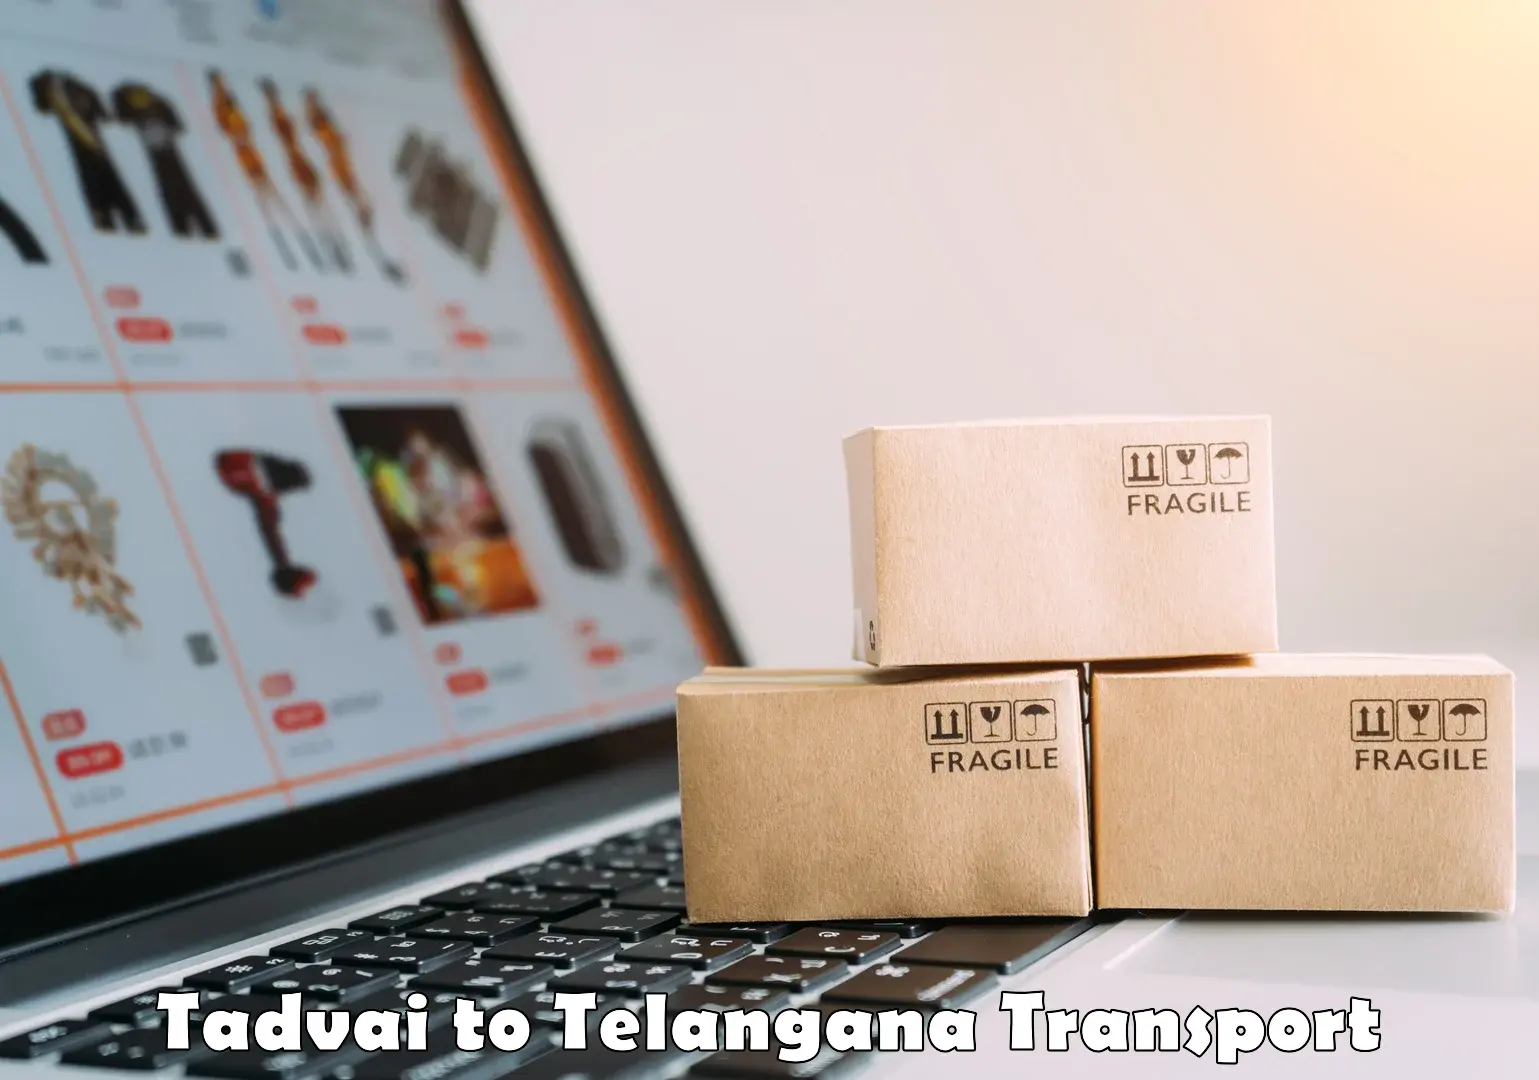 Online transport Tadvai to Mogulla Pally